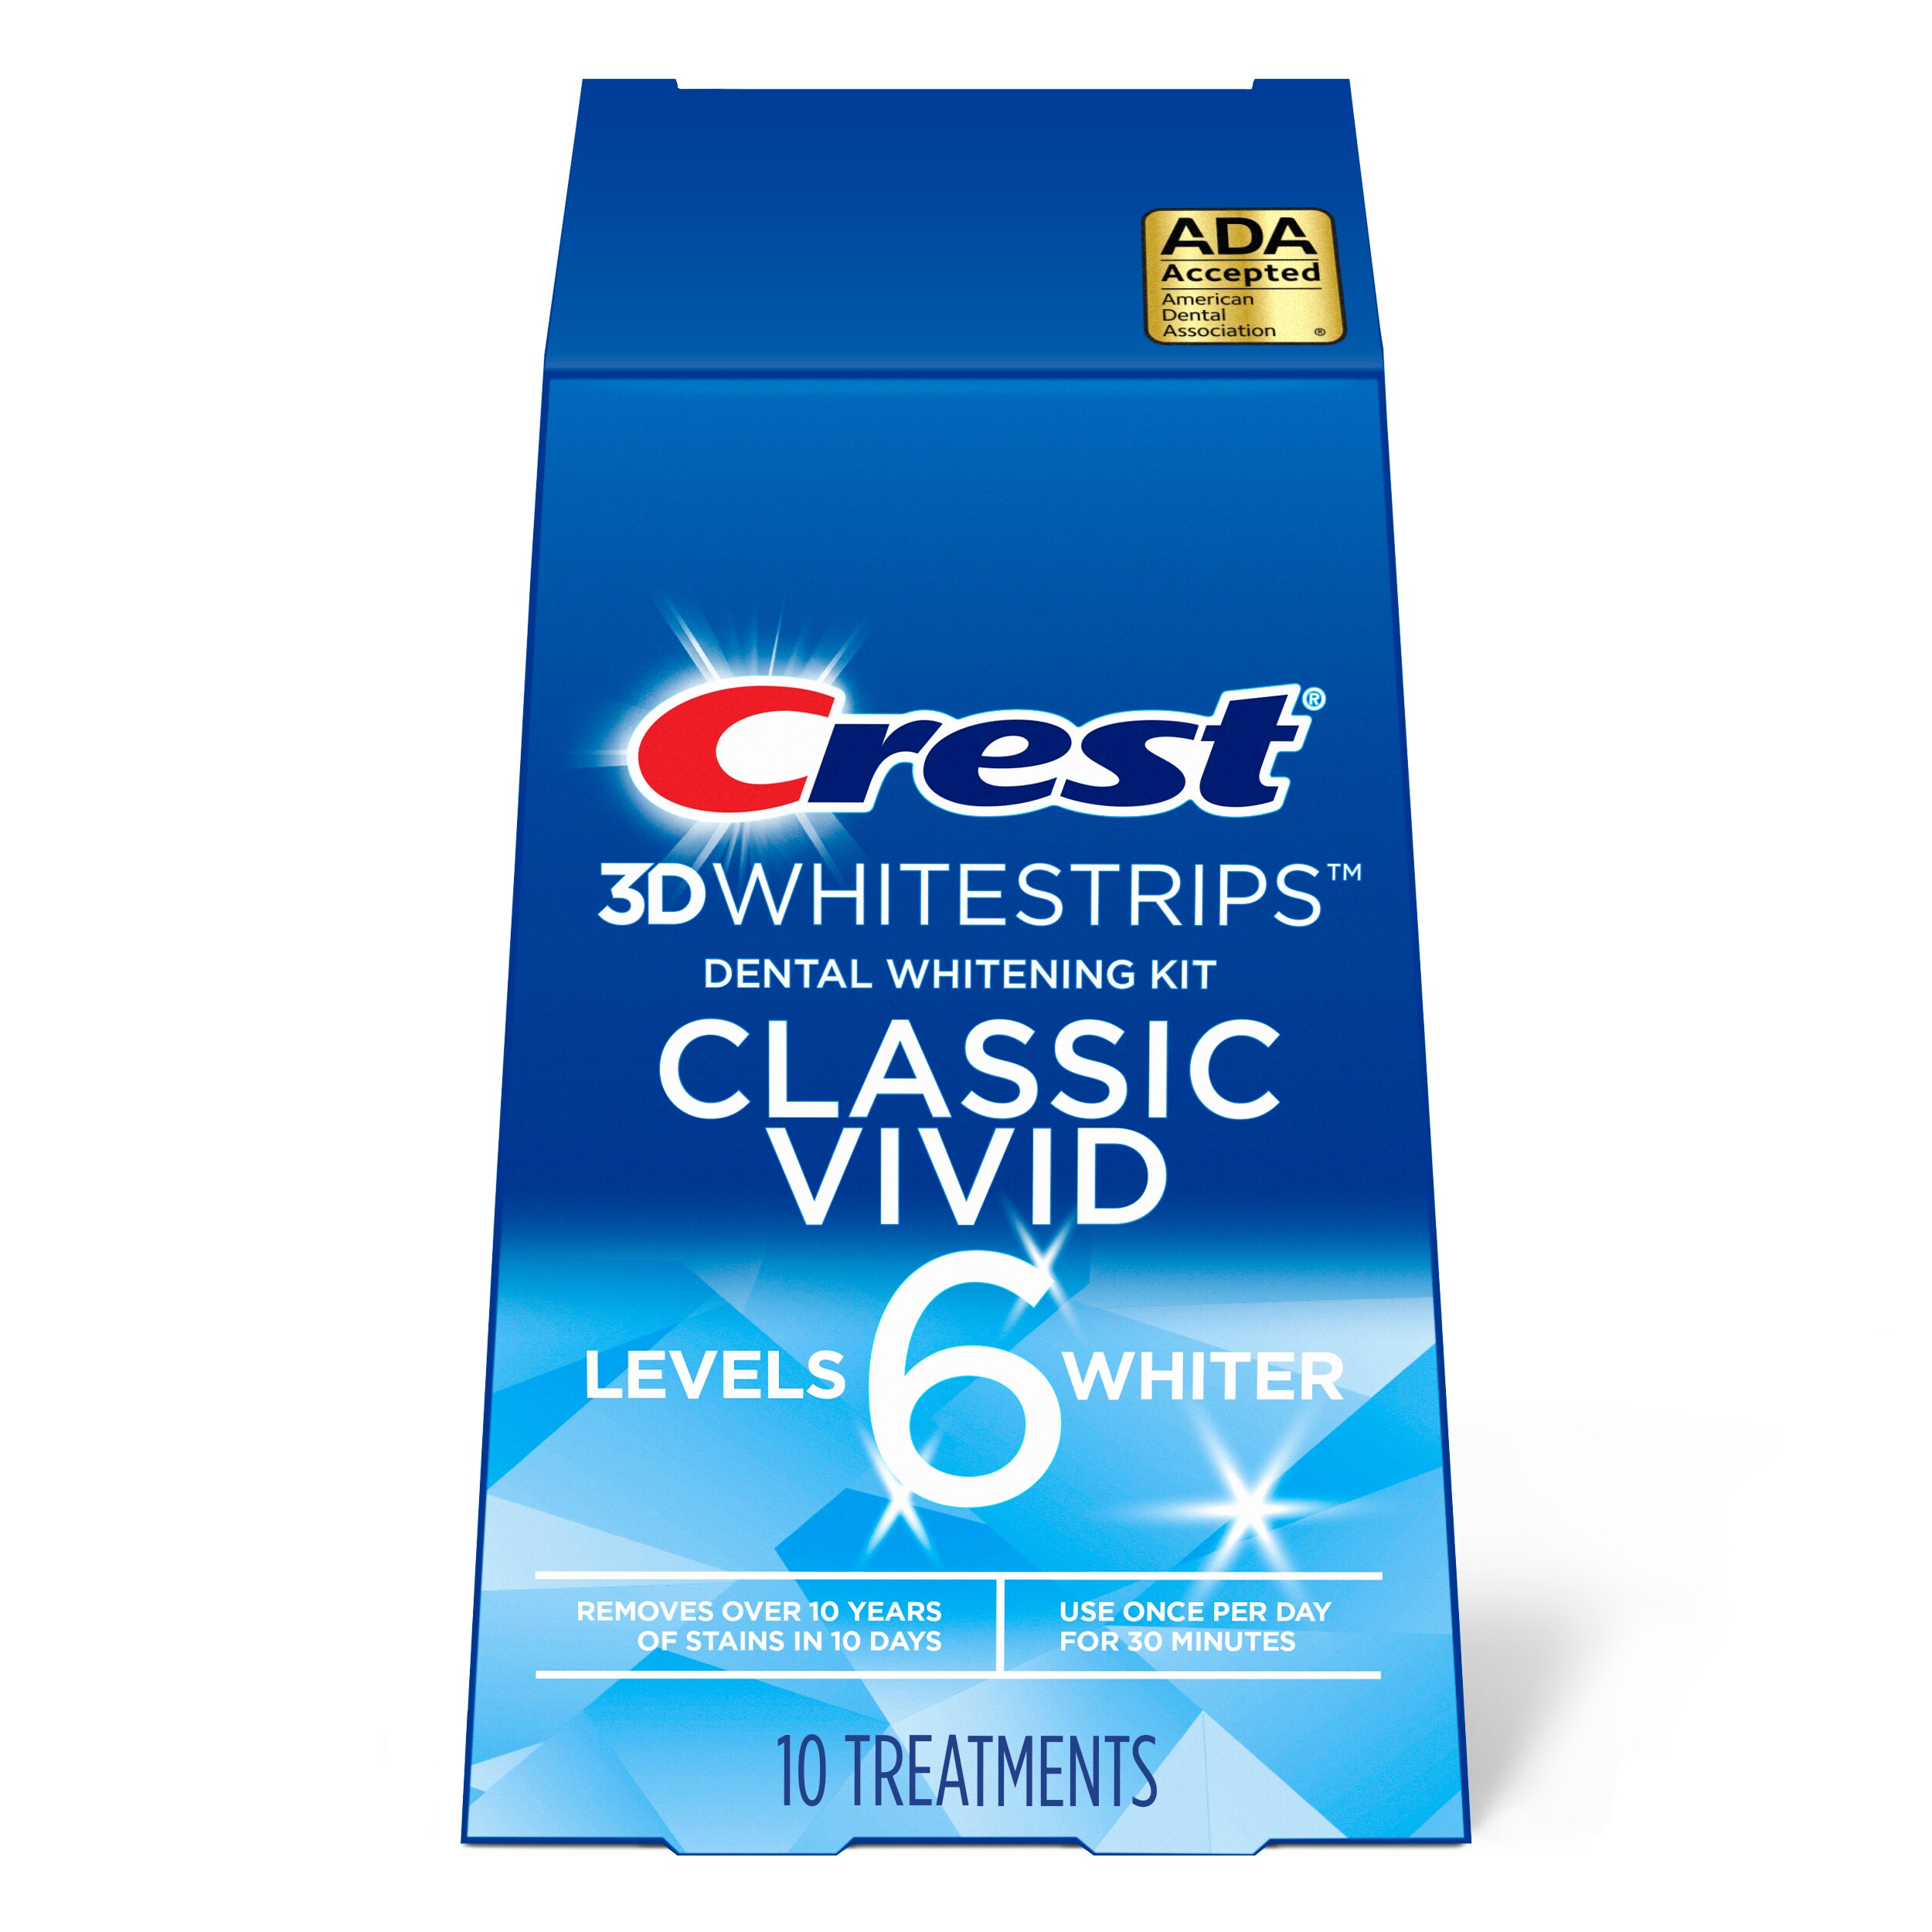 Crest 3D Whitestrips Classic Vivid - Kit de blanqueamiento dental en casa, 10 tratamientos, 6 niveles más blancos